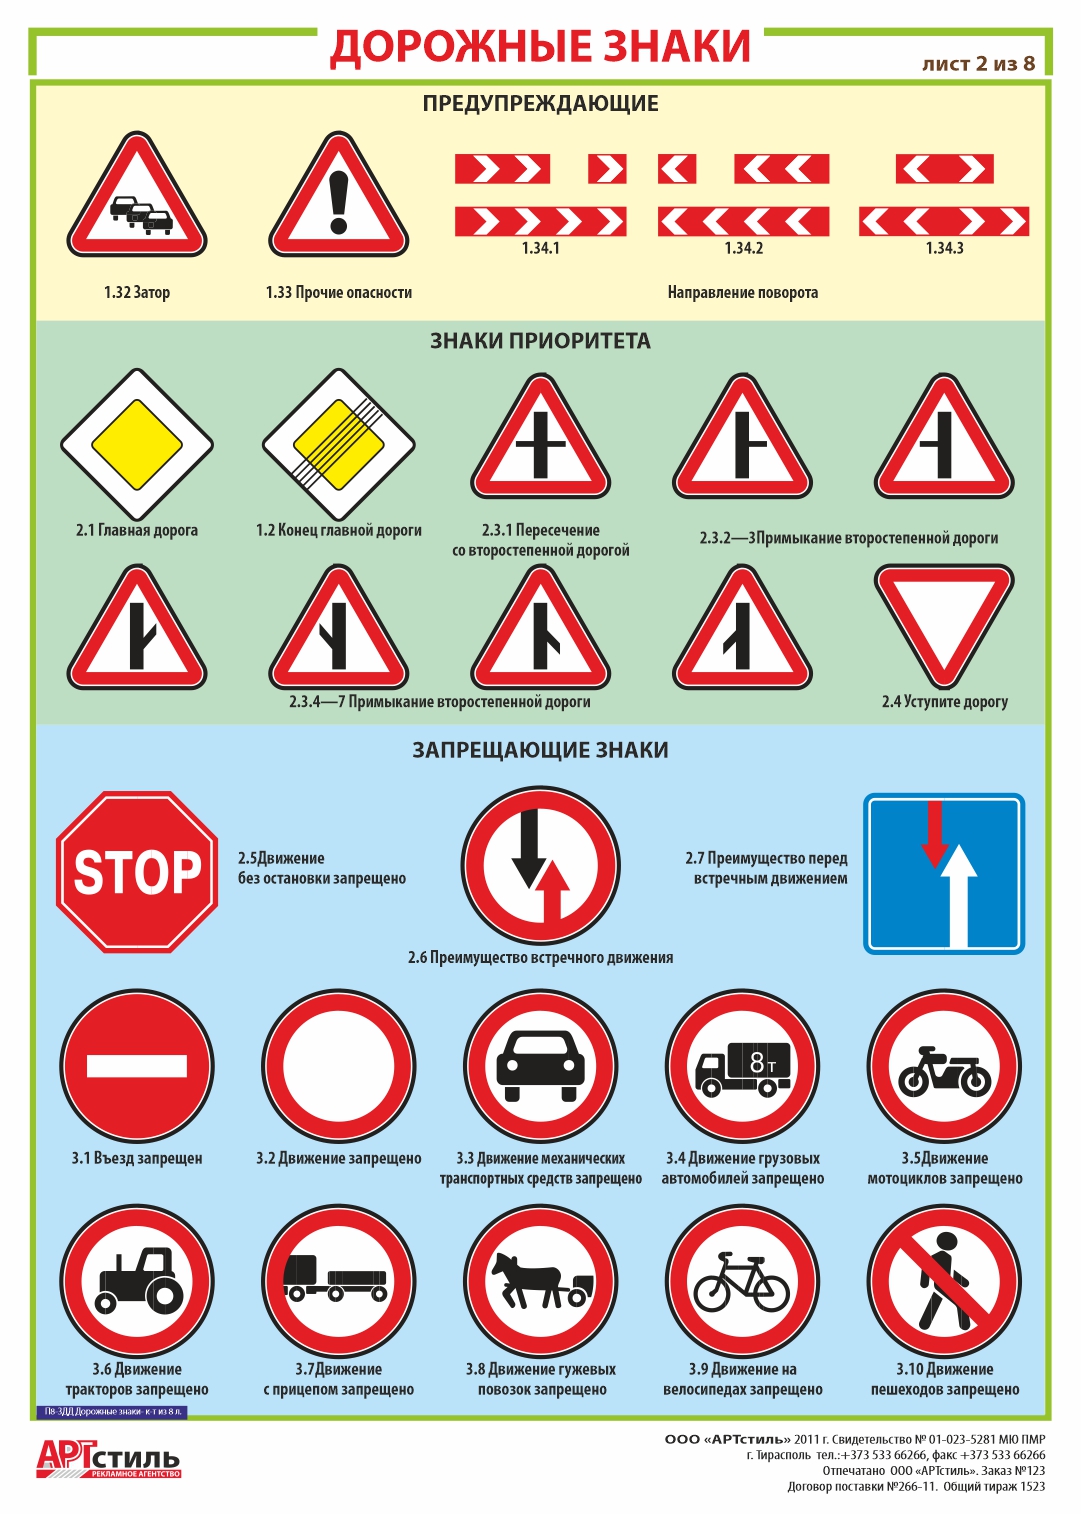 Дорожные знаки предупреждающие, приоритета, запрещающие